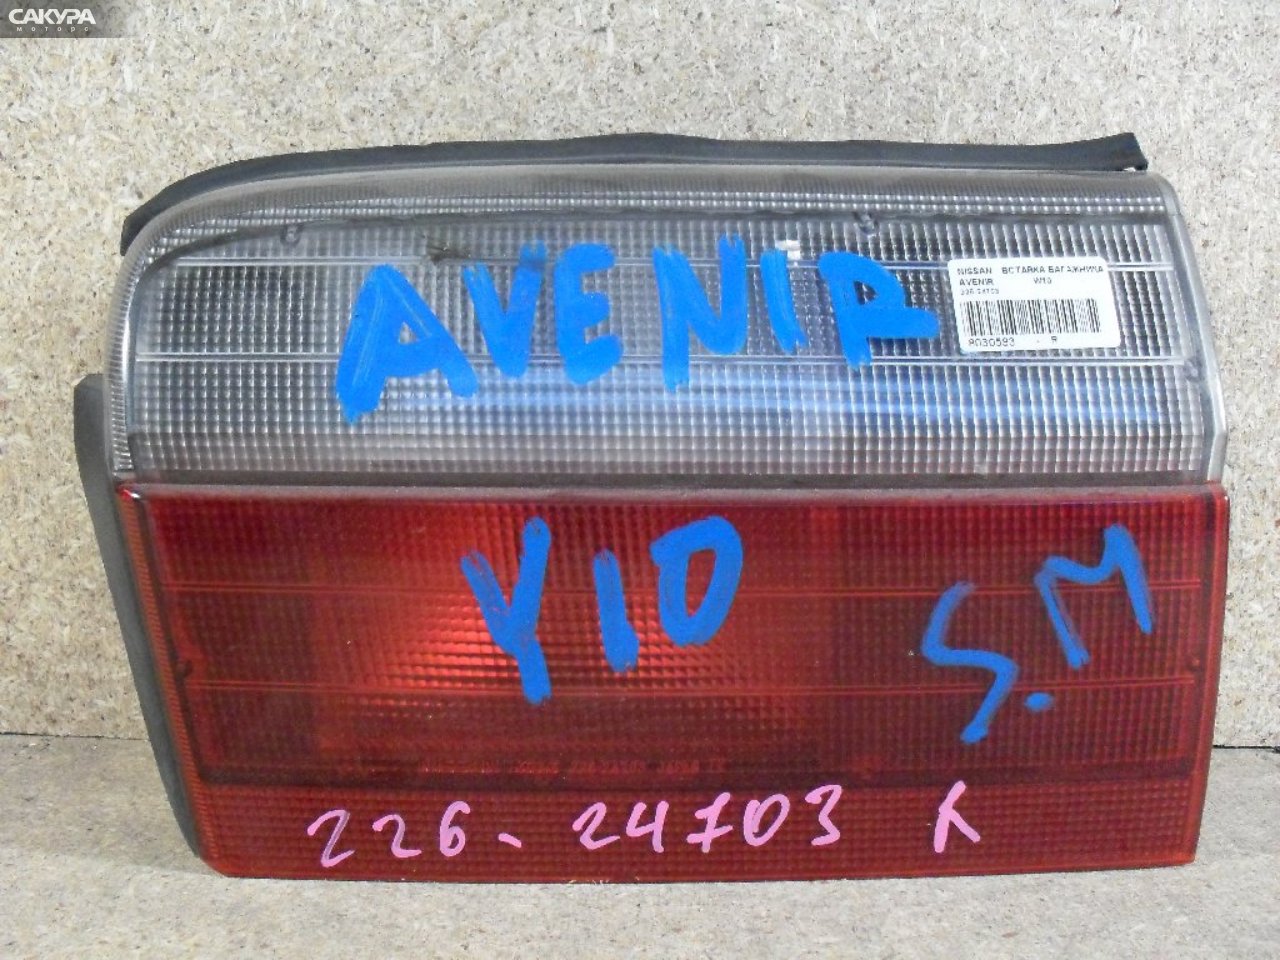 Фонарь вставка багажника правый Nissan Avenir W10 226-24703: купить в Сакура Абакан.